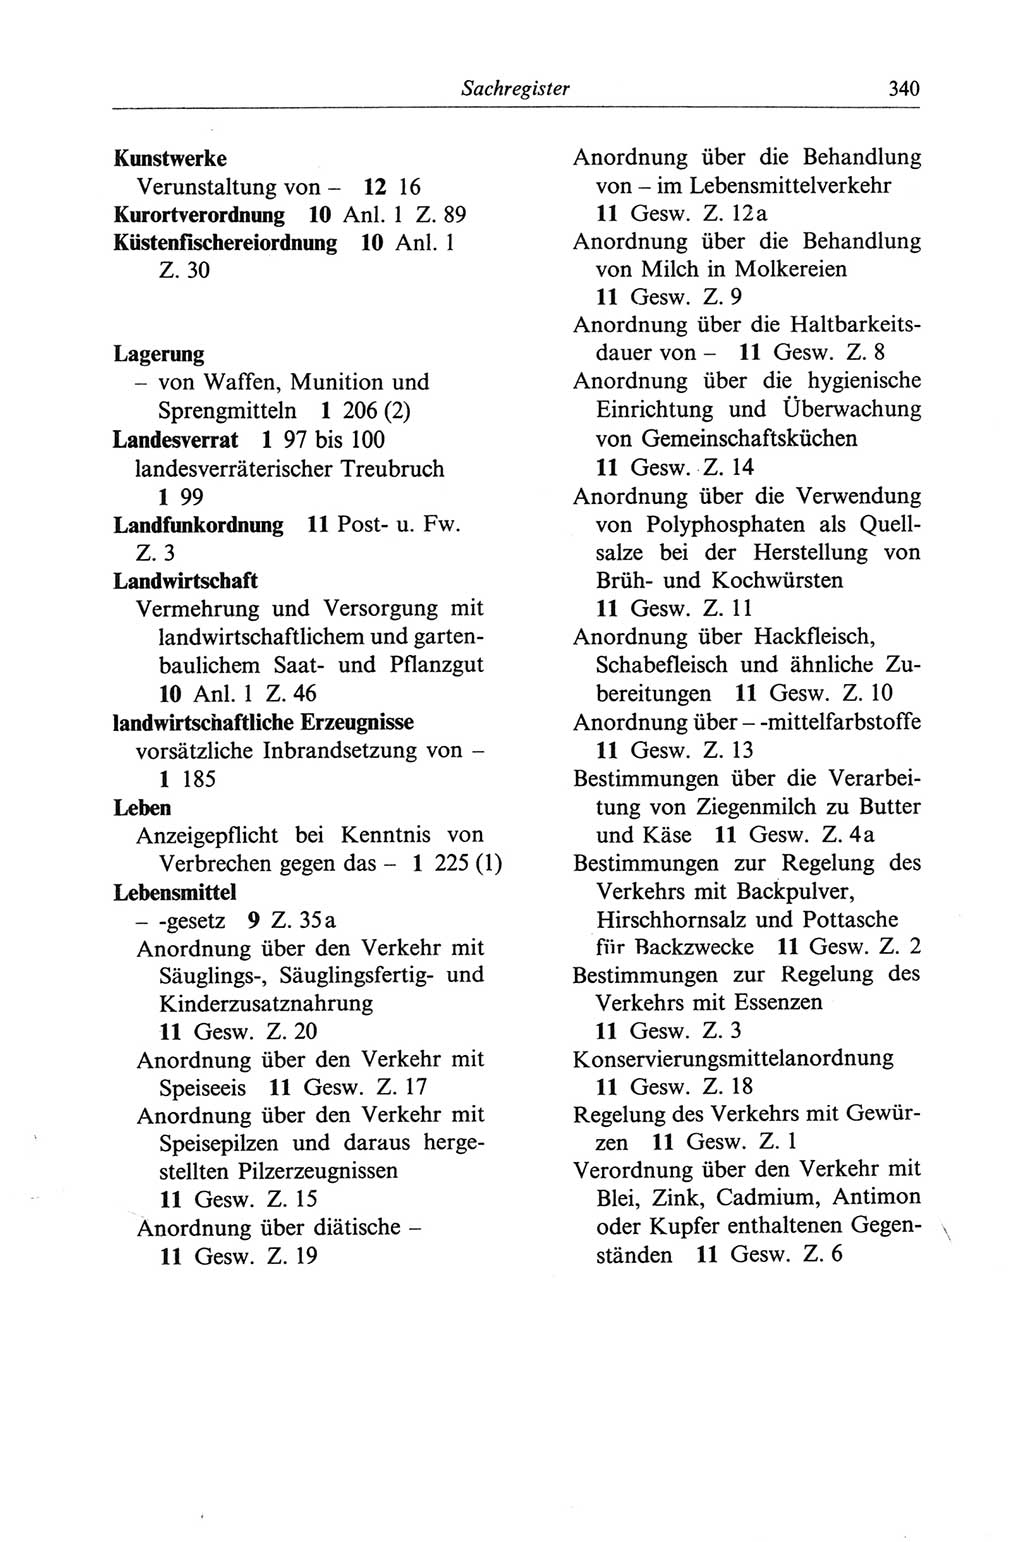 Strafgesetzbuch (StGB) der Deutschen Demokratischen Republik (DDR) und angrenzende Gesetze und Bestimmungen 1968, Seite 340 (StGB Ges. Best. DDR 1968, S. 340)